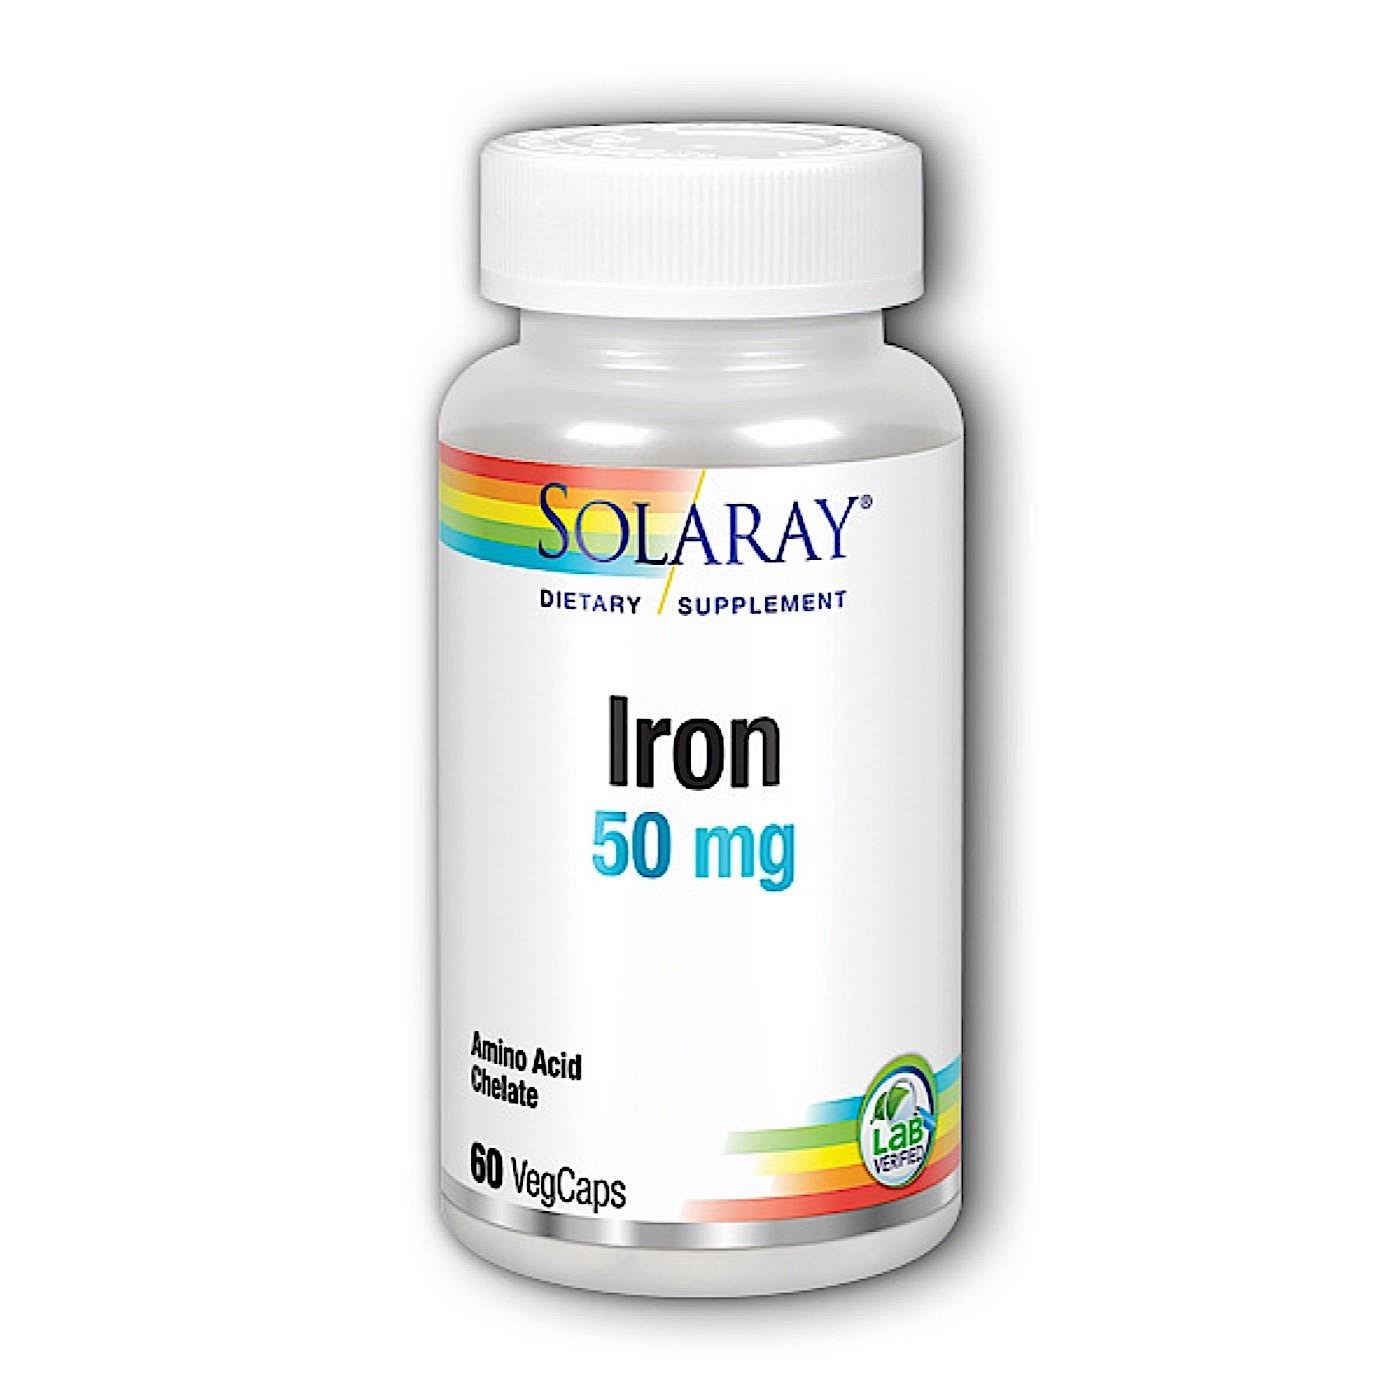 Solaray Iron 50Mg Dietary Supplement - 60 Capsules